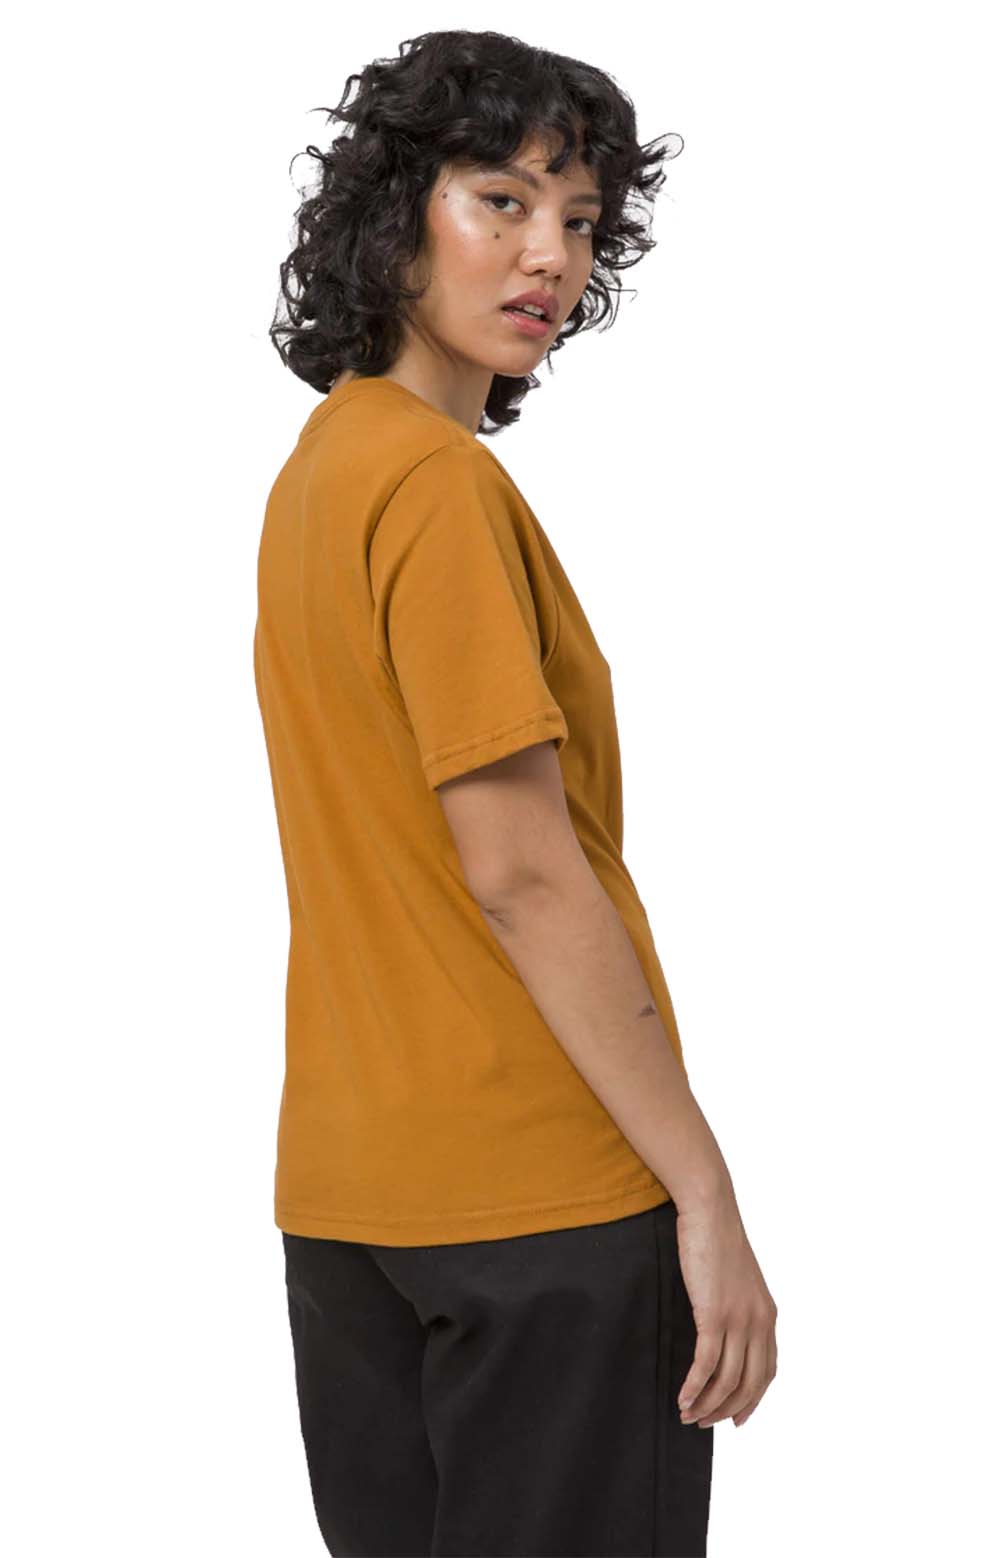 Embroidered TT S/S Relax T-Shirt - Burnt Orange